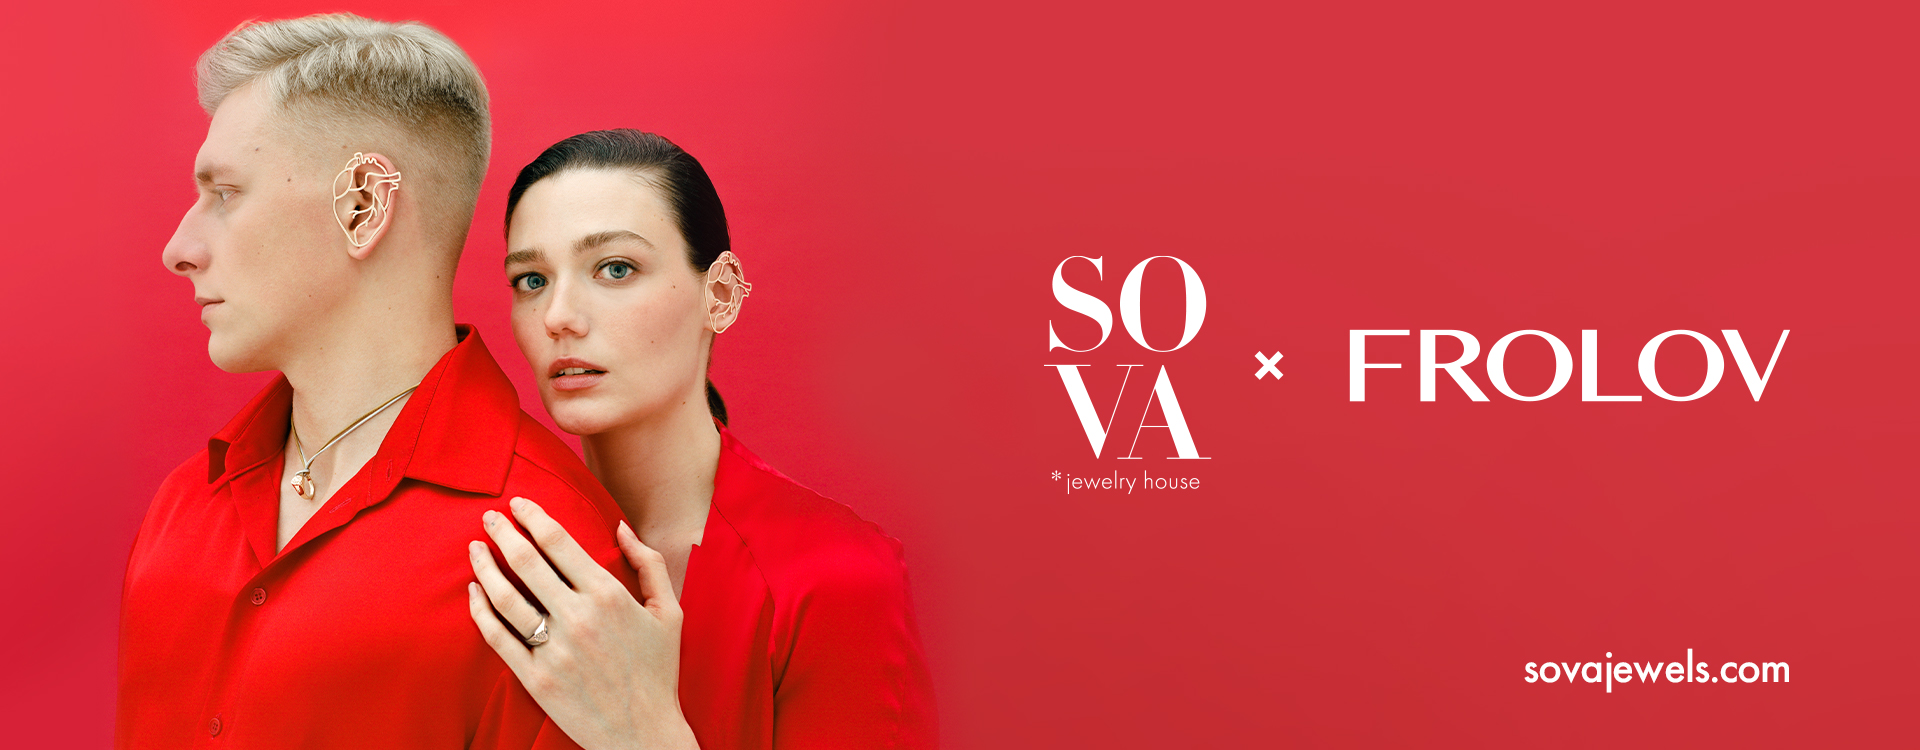 SOVA x FROLOV: нова колаборація, яка рятує життя